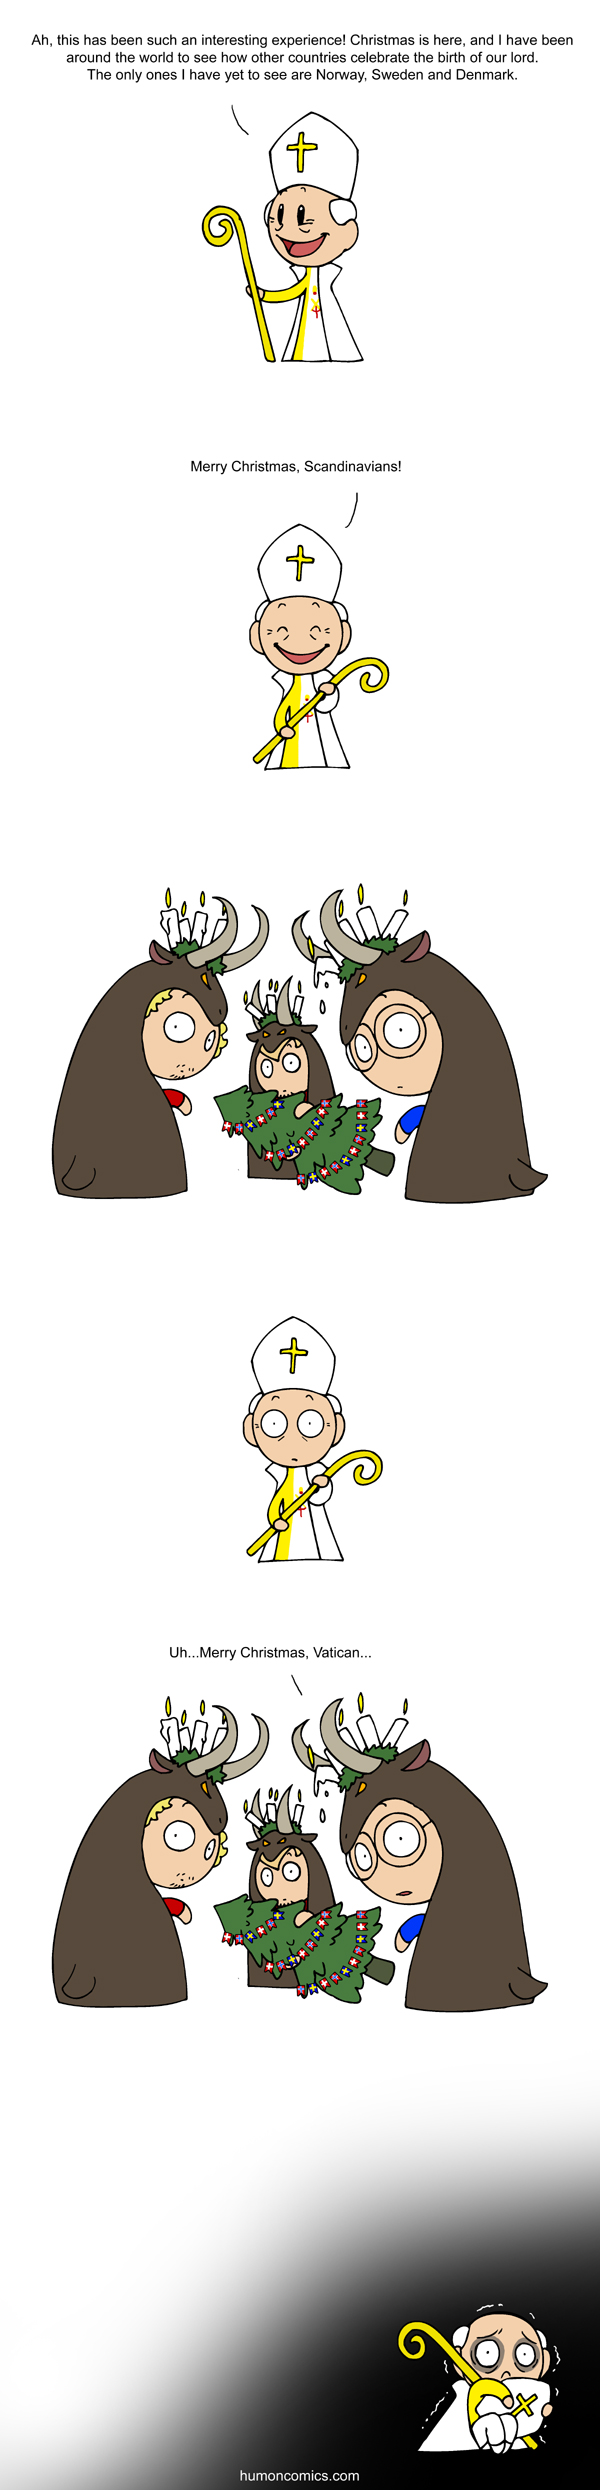 Christmas Traditions satwcomic.com